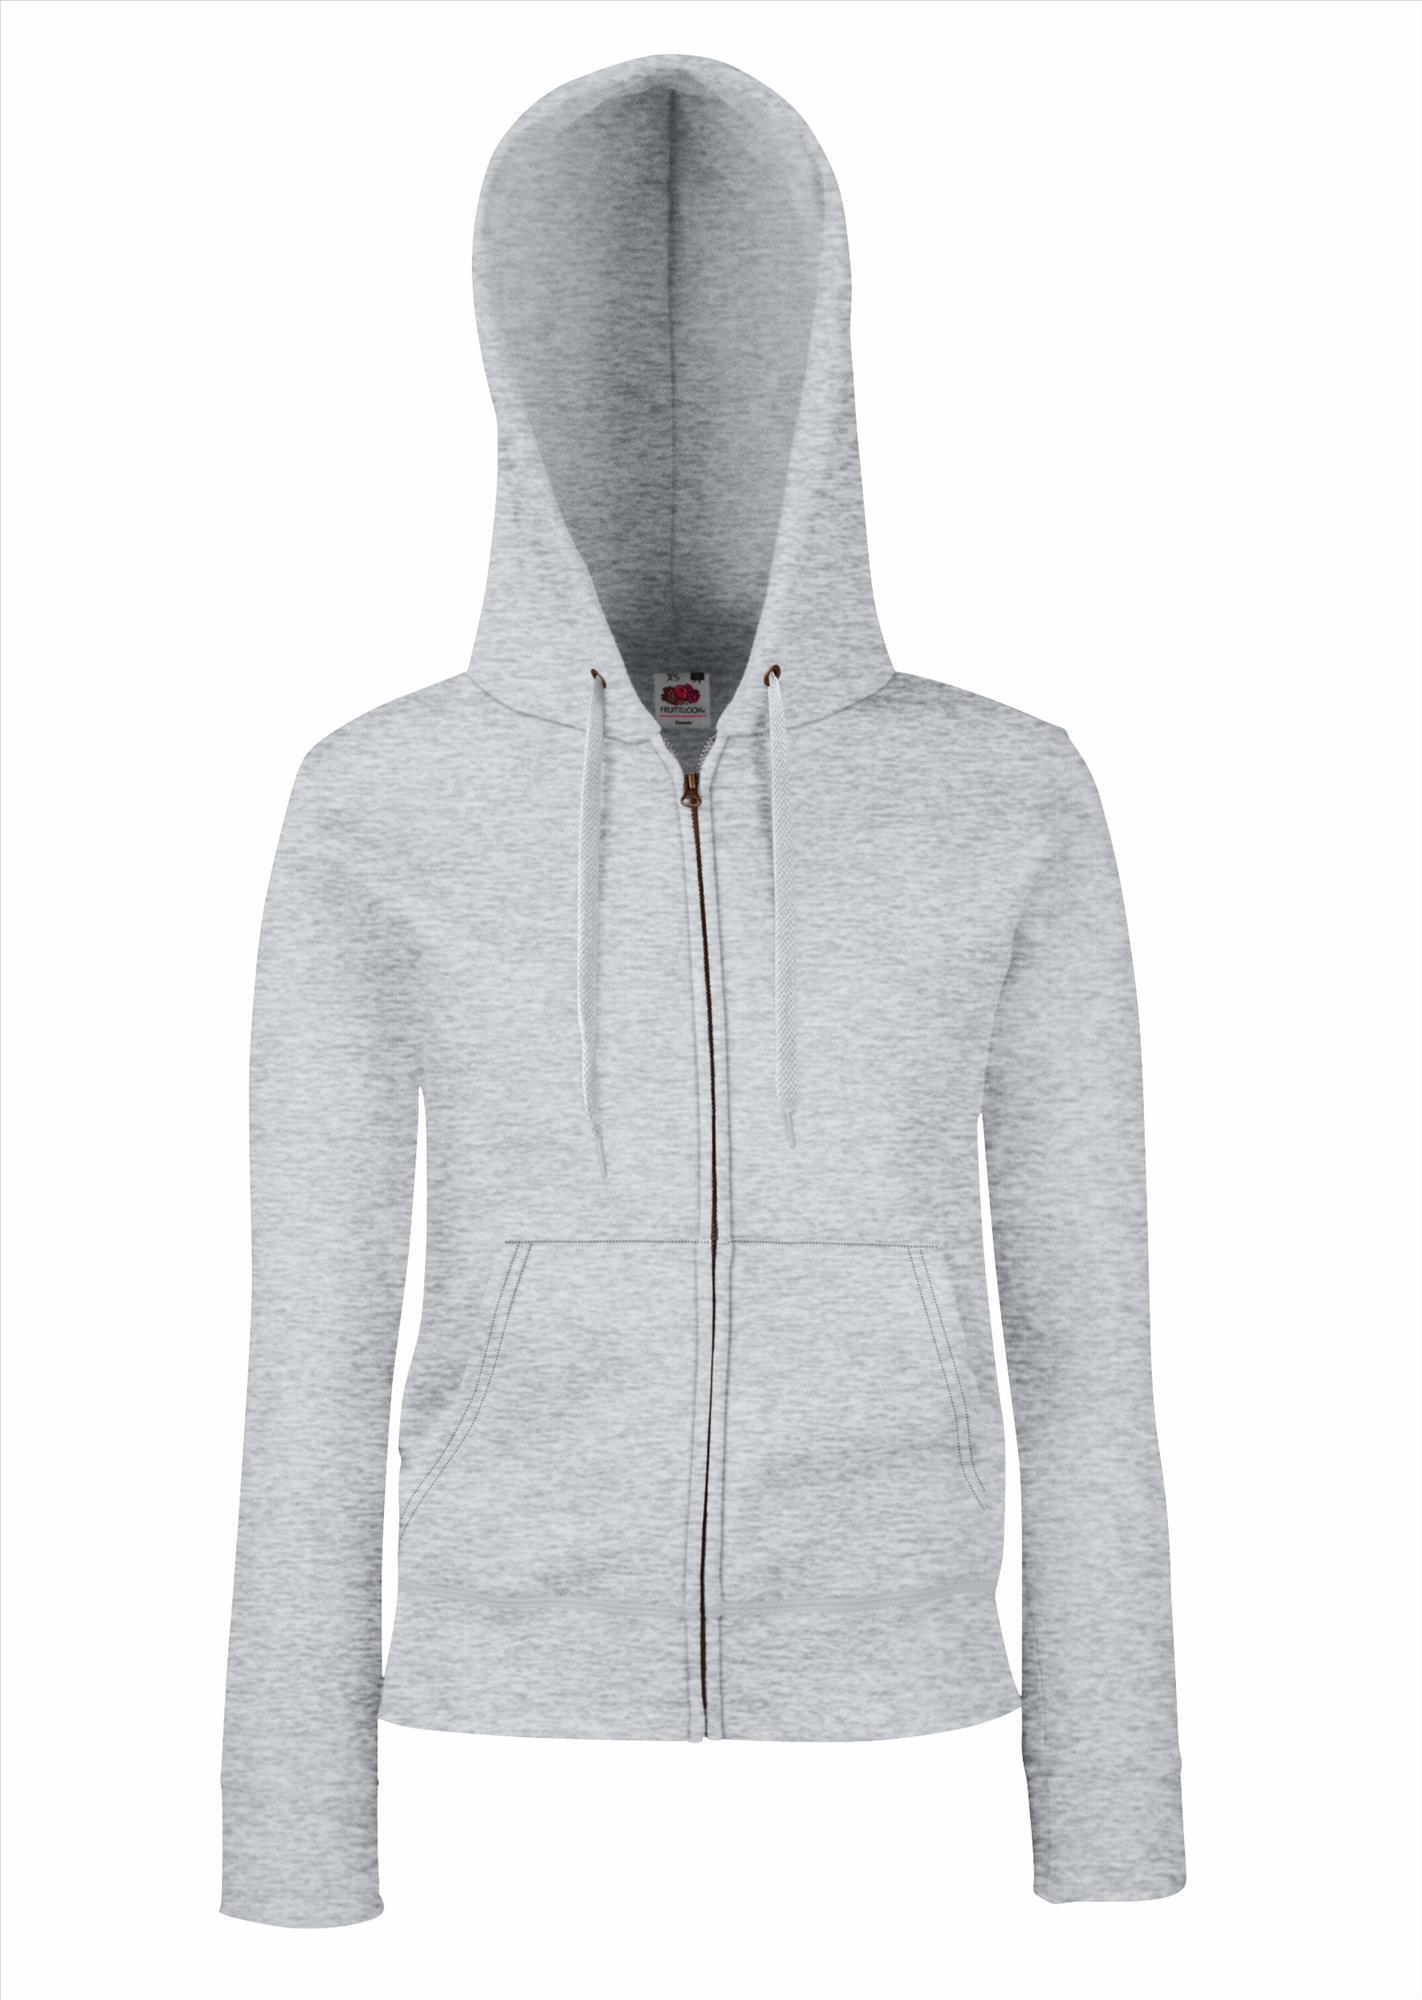 Dames hoodie heide grijs je eigen hoodie personaliseren met eigen tekst